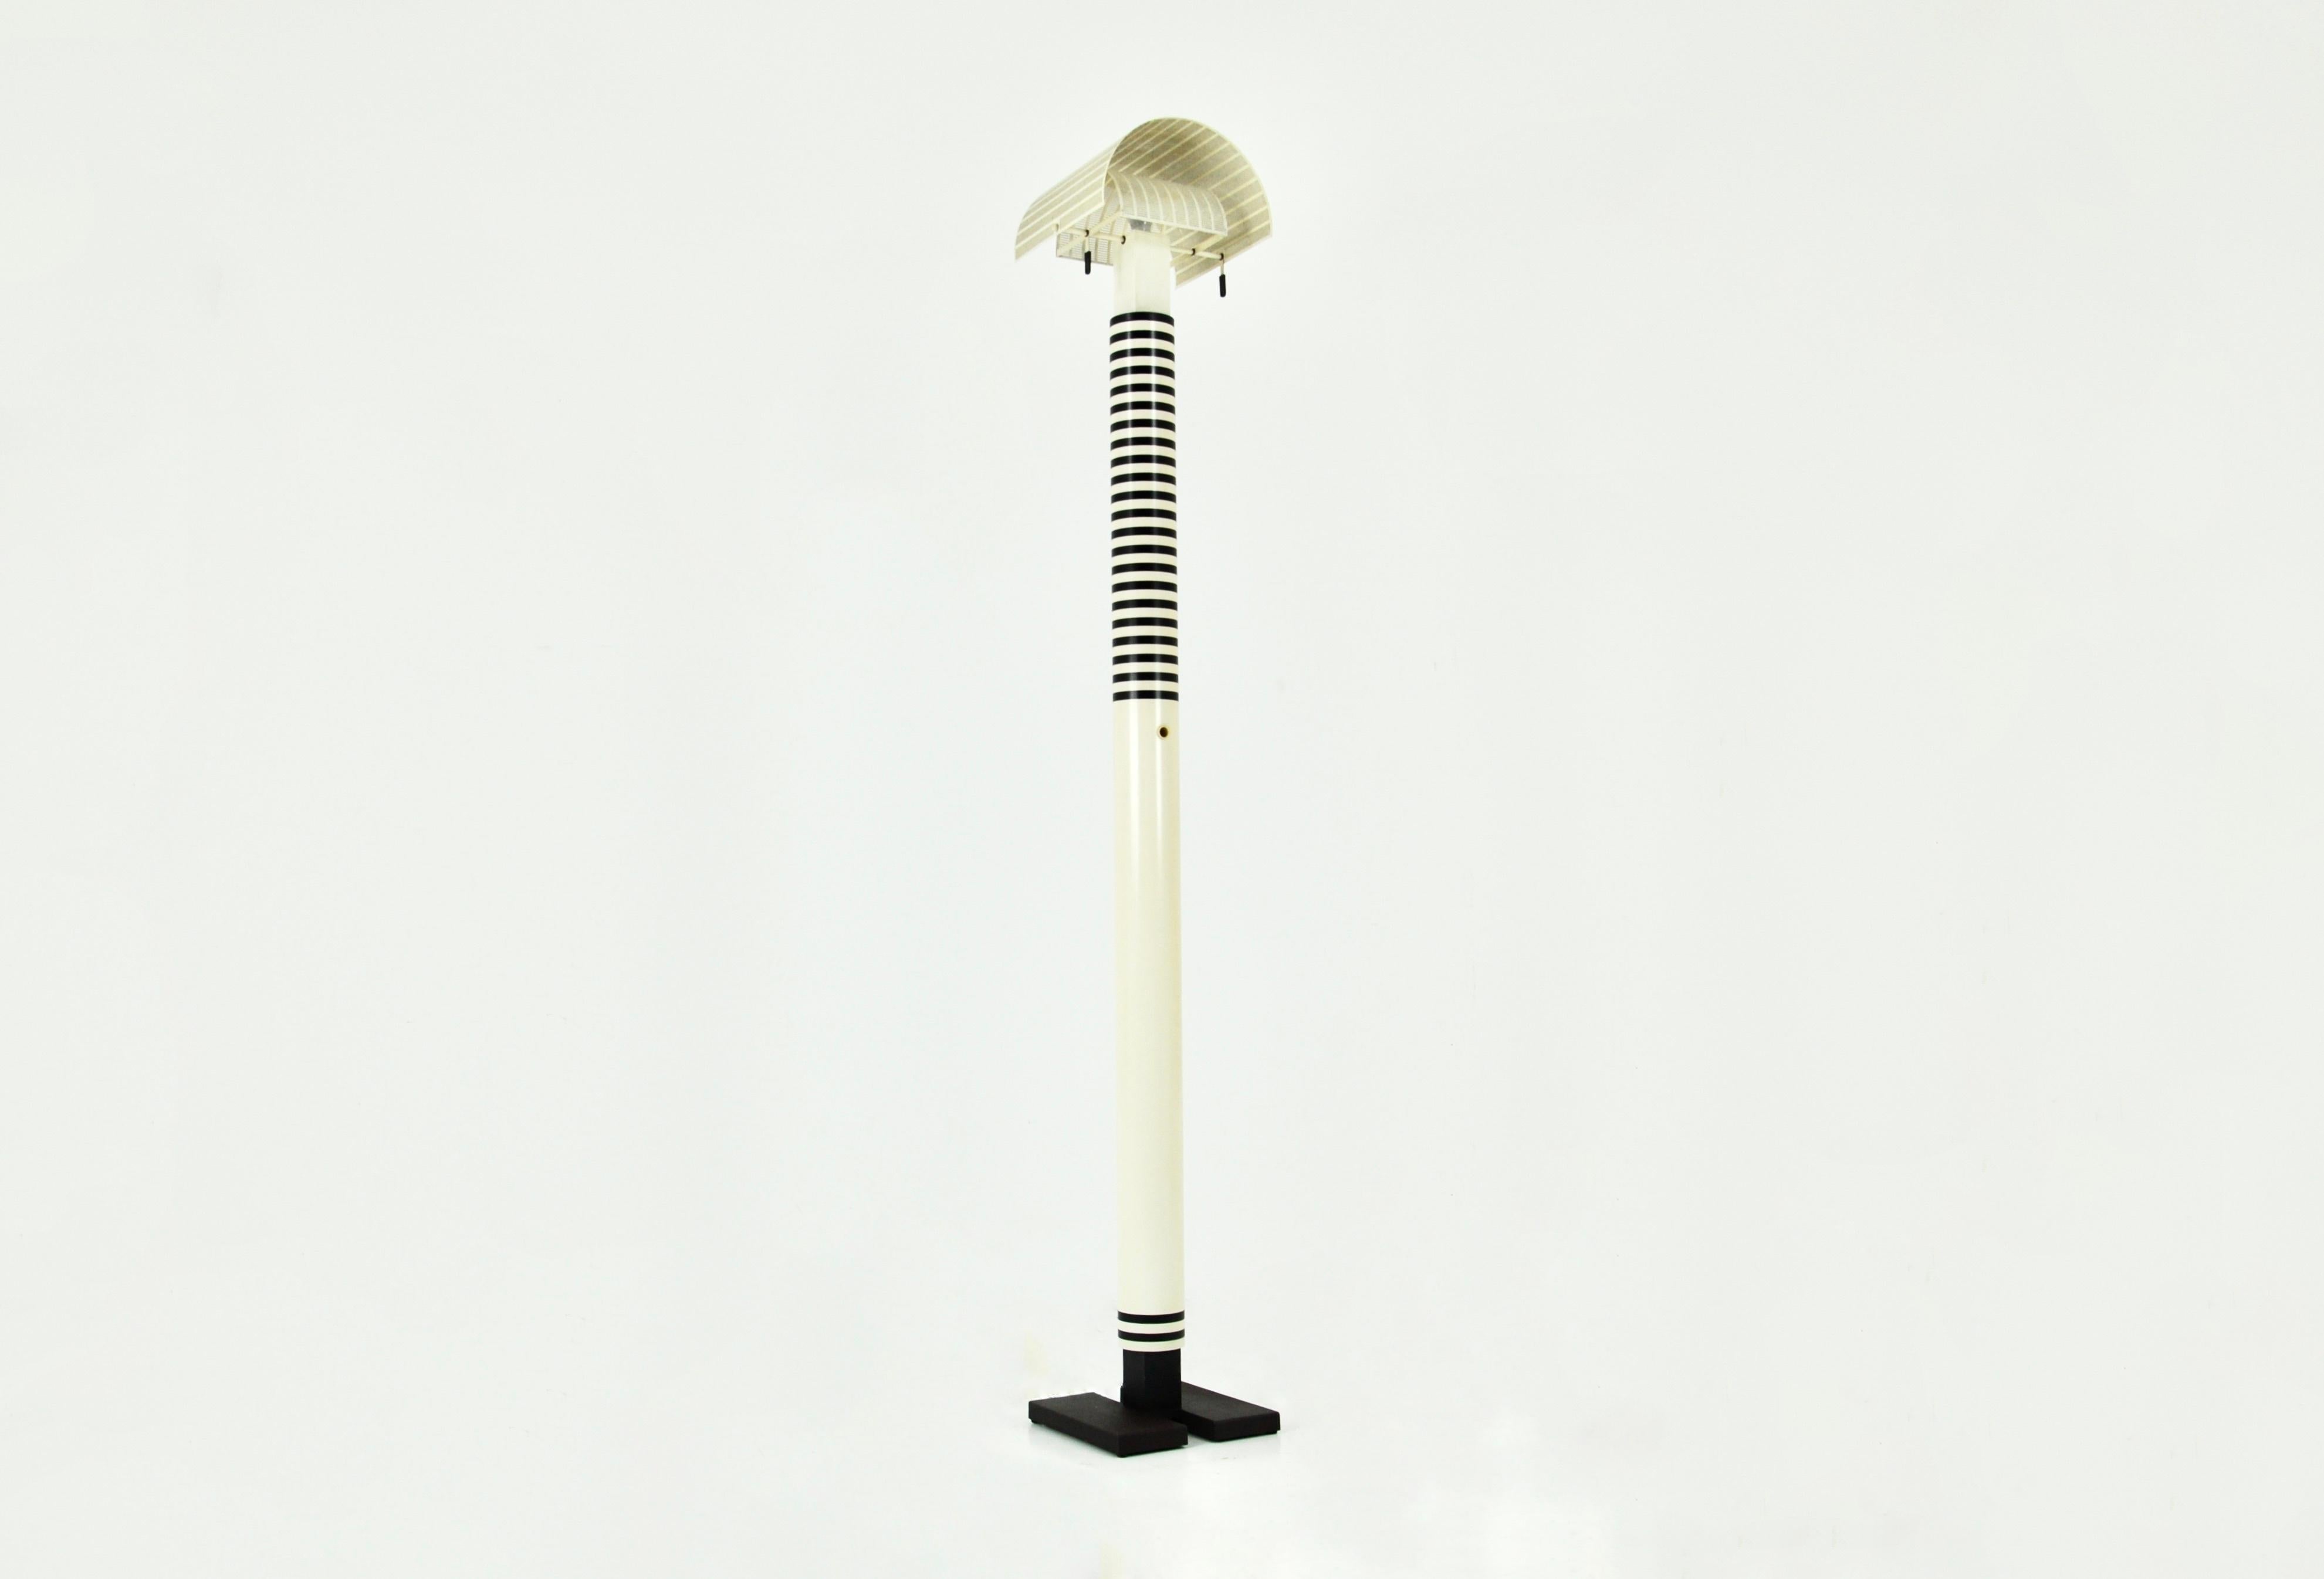 Lampadaire noir et blanc en métal et plastique par Mario Botta. Modèle : Shogun. Abat-jour inclinable. Estampillé Mario Botta. Usure due au temps et à l'âge de la lampe.
  